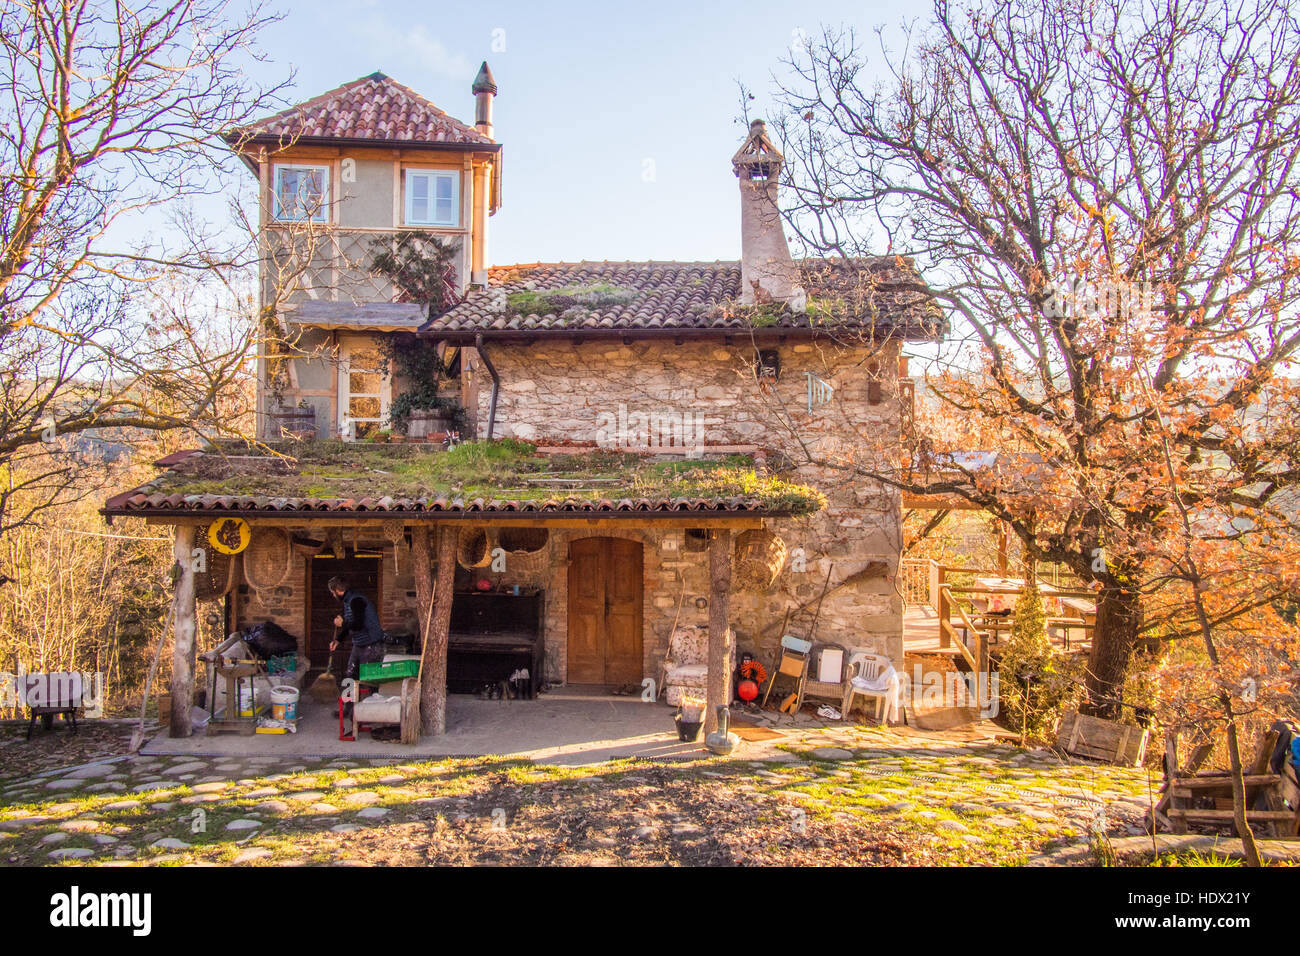 Farmhouse in Villa Minozzo, Reggio Emilia province, Emila Romagna region, Italy. Stock Photo